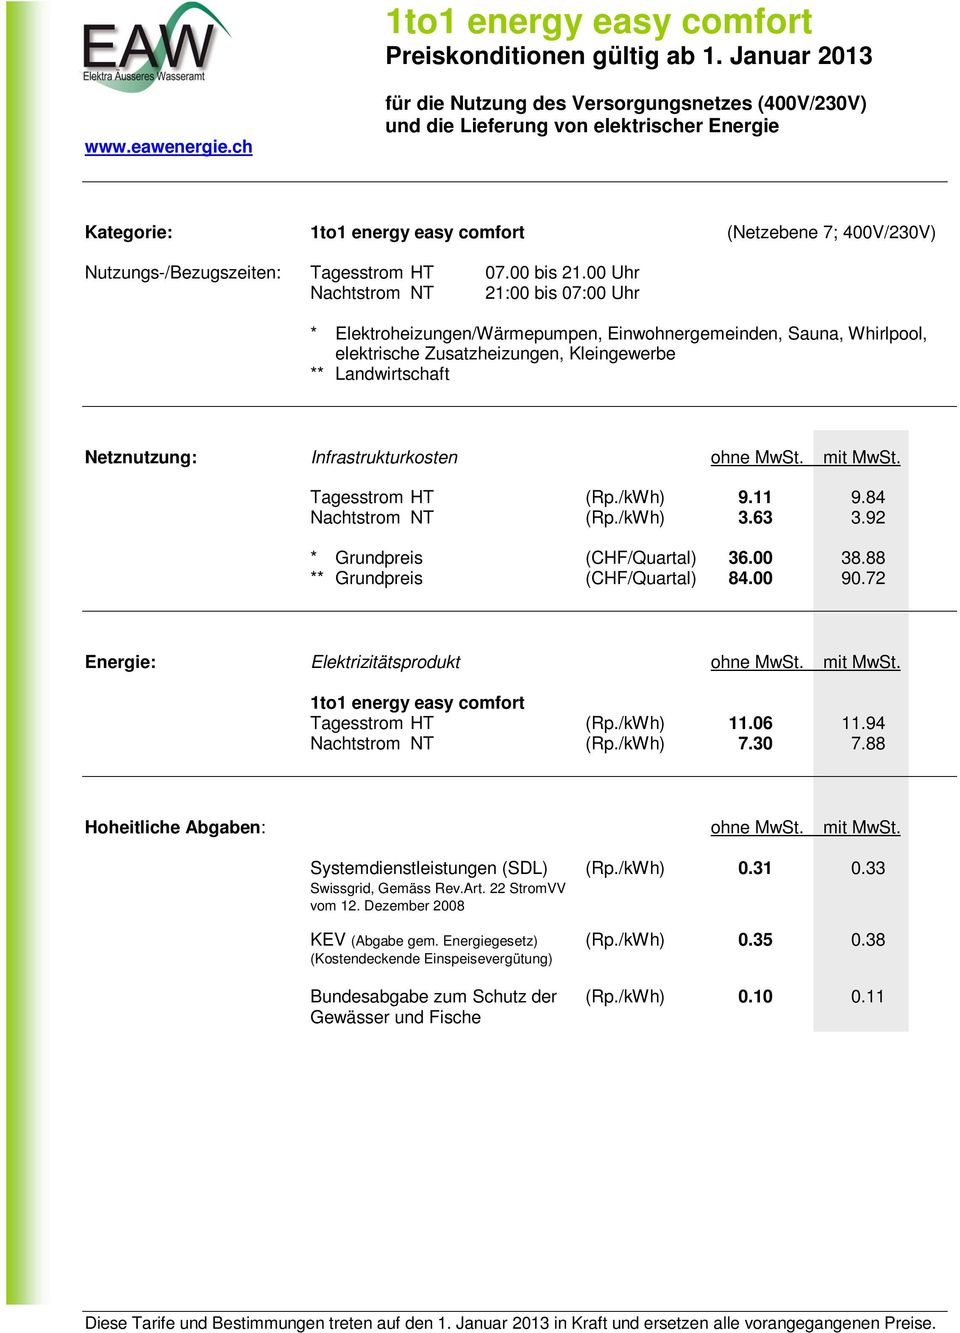 Kleingewerbe ** Landwirtschaft Tagesstrom HT (Rp./kWh) 9.11 9.84 Nachtstrom NT (Rp./kWh) 3.63 3.92 * Grundpreis (CHF/Quartal) 36.00 38.